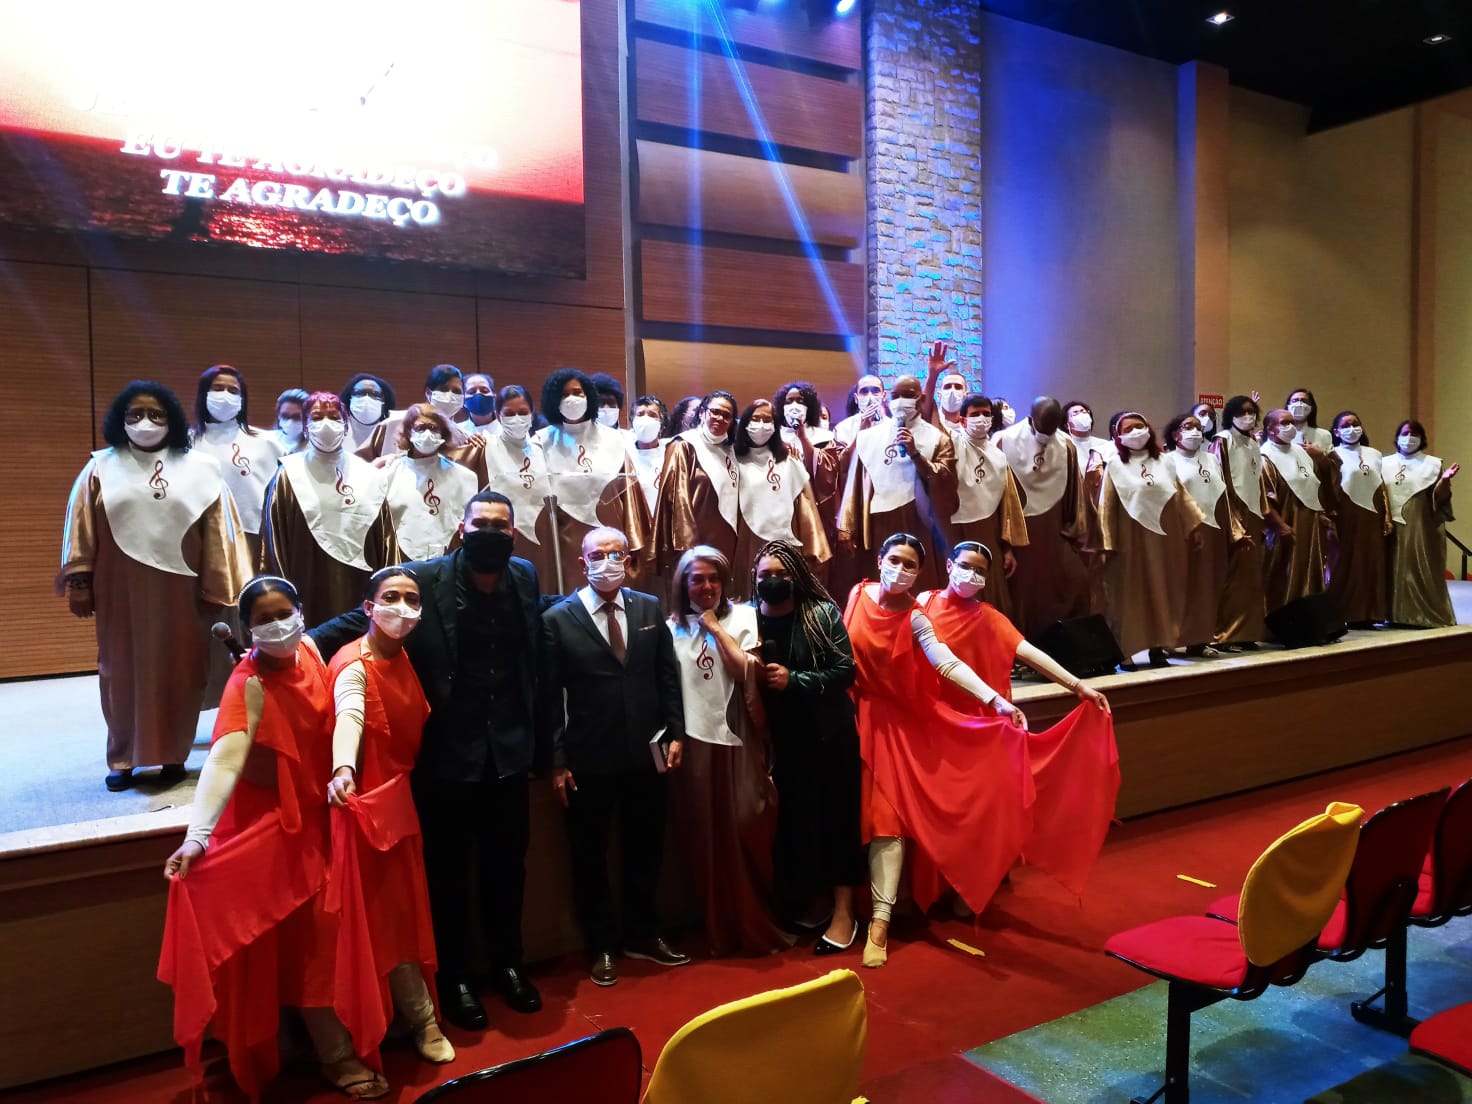 Igreja Batista da Pavuna recebe o musical 'O Natal de Verdade' neste domingo